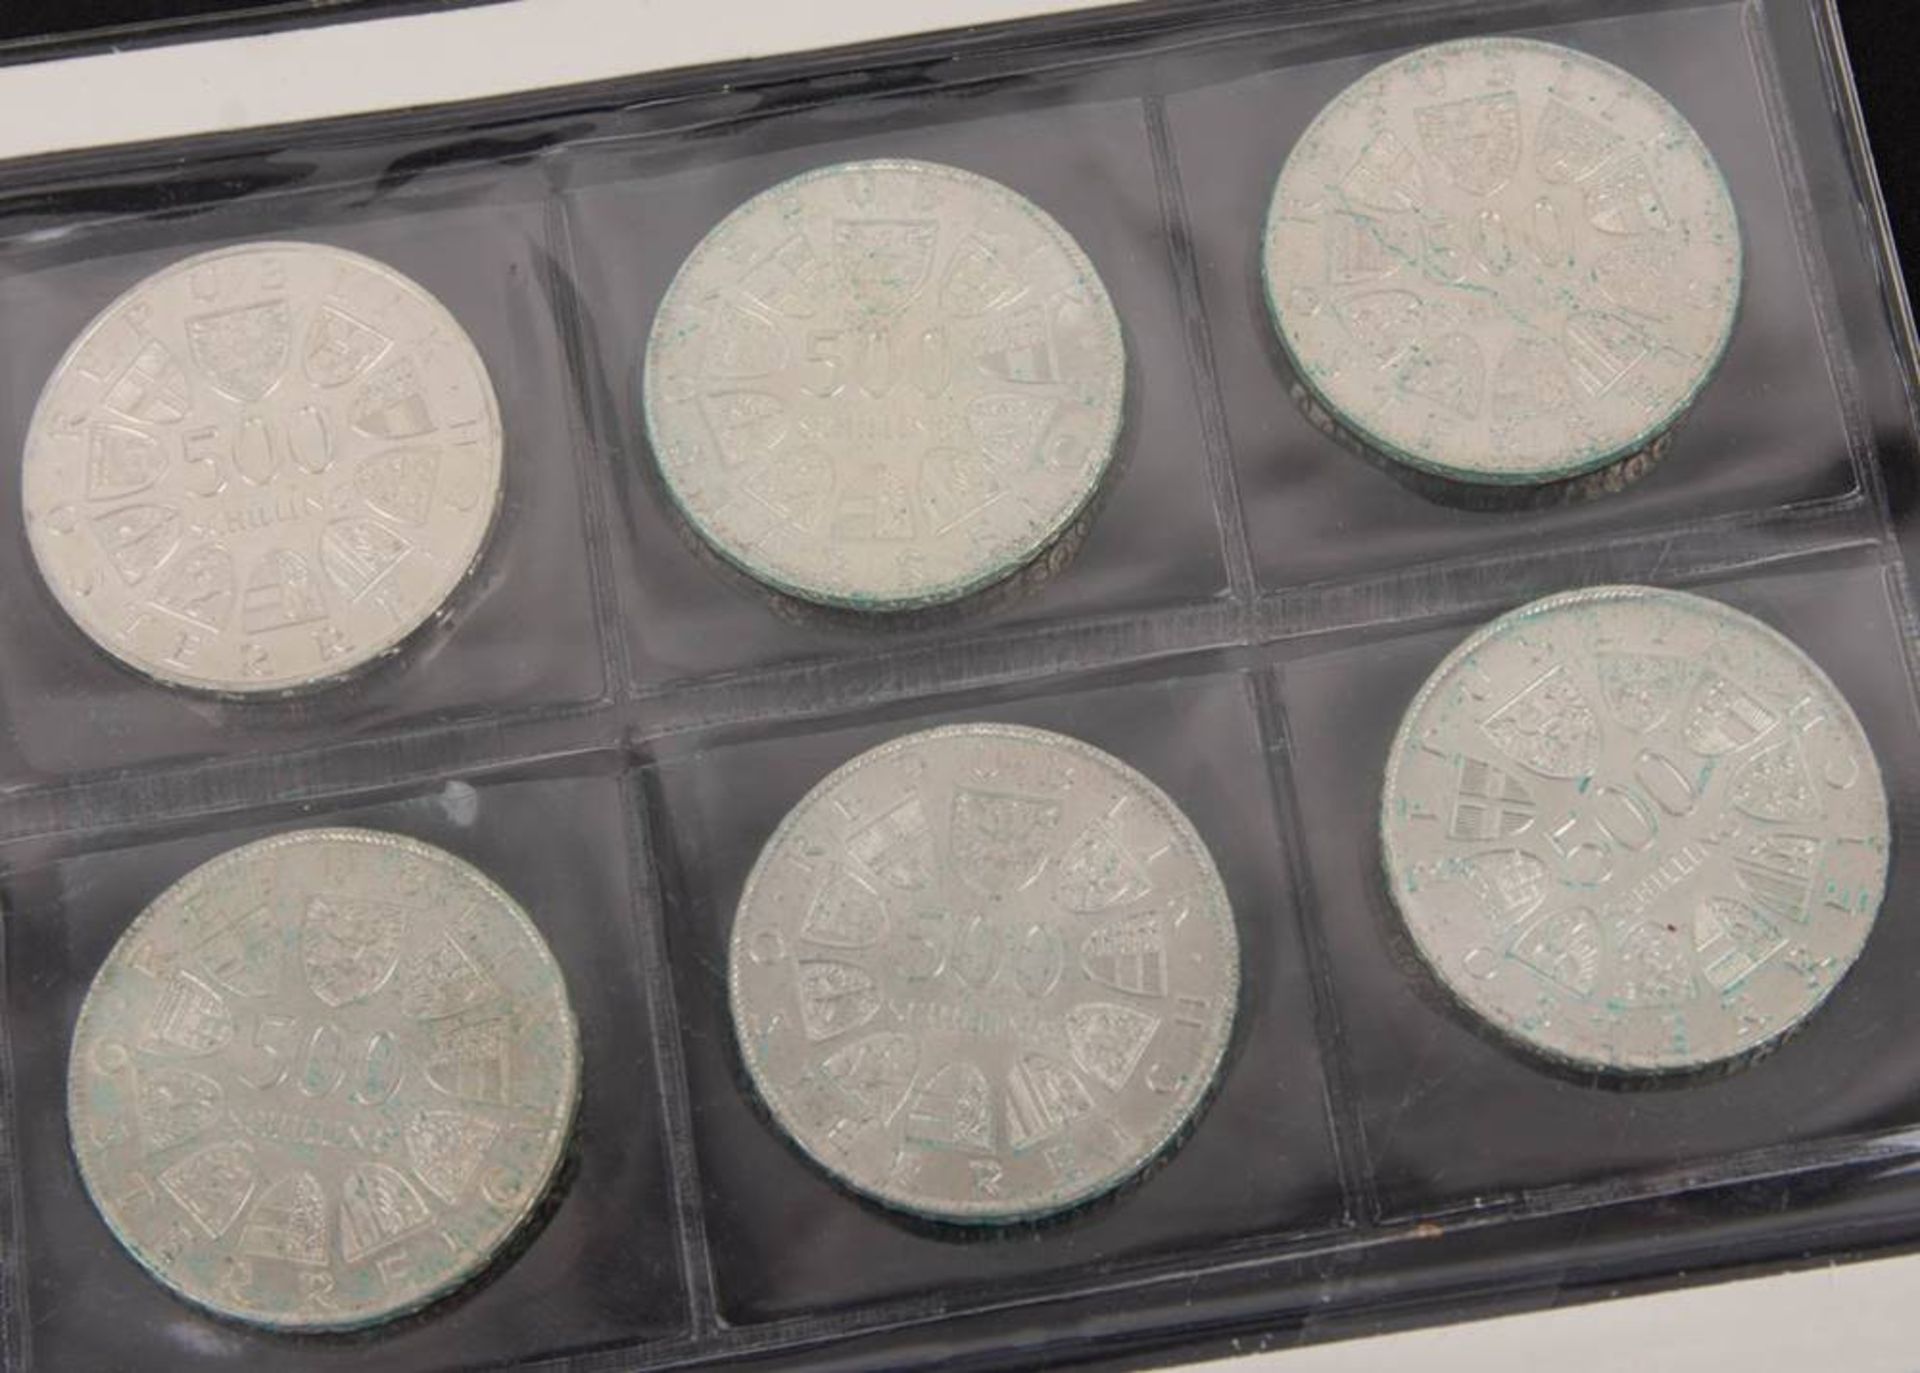 Österreich: Silbermünzen 2. Republik 12x500 ATS. - Bild 3 aus 5